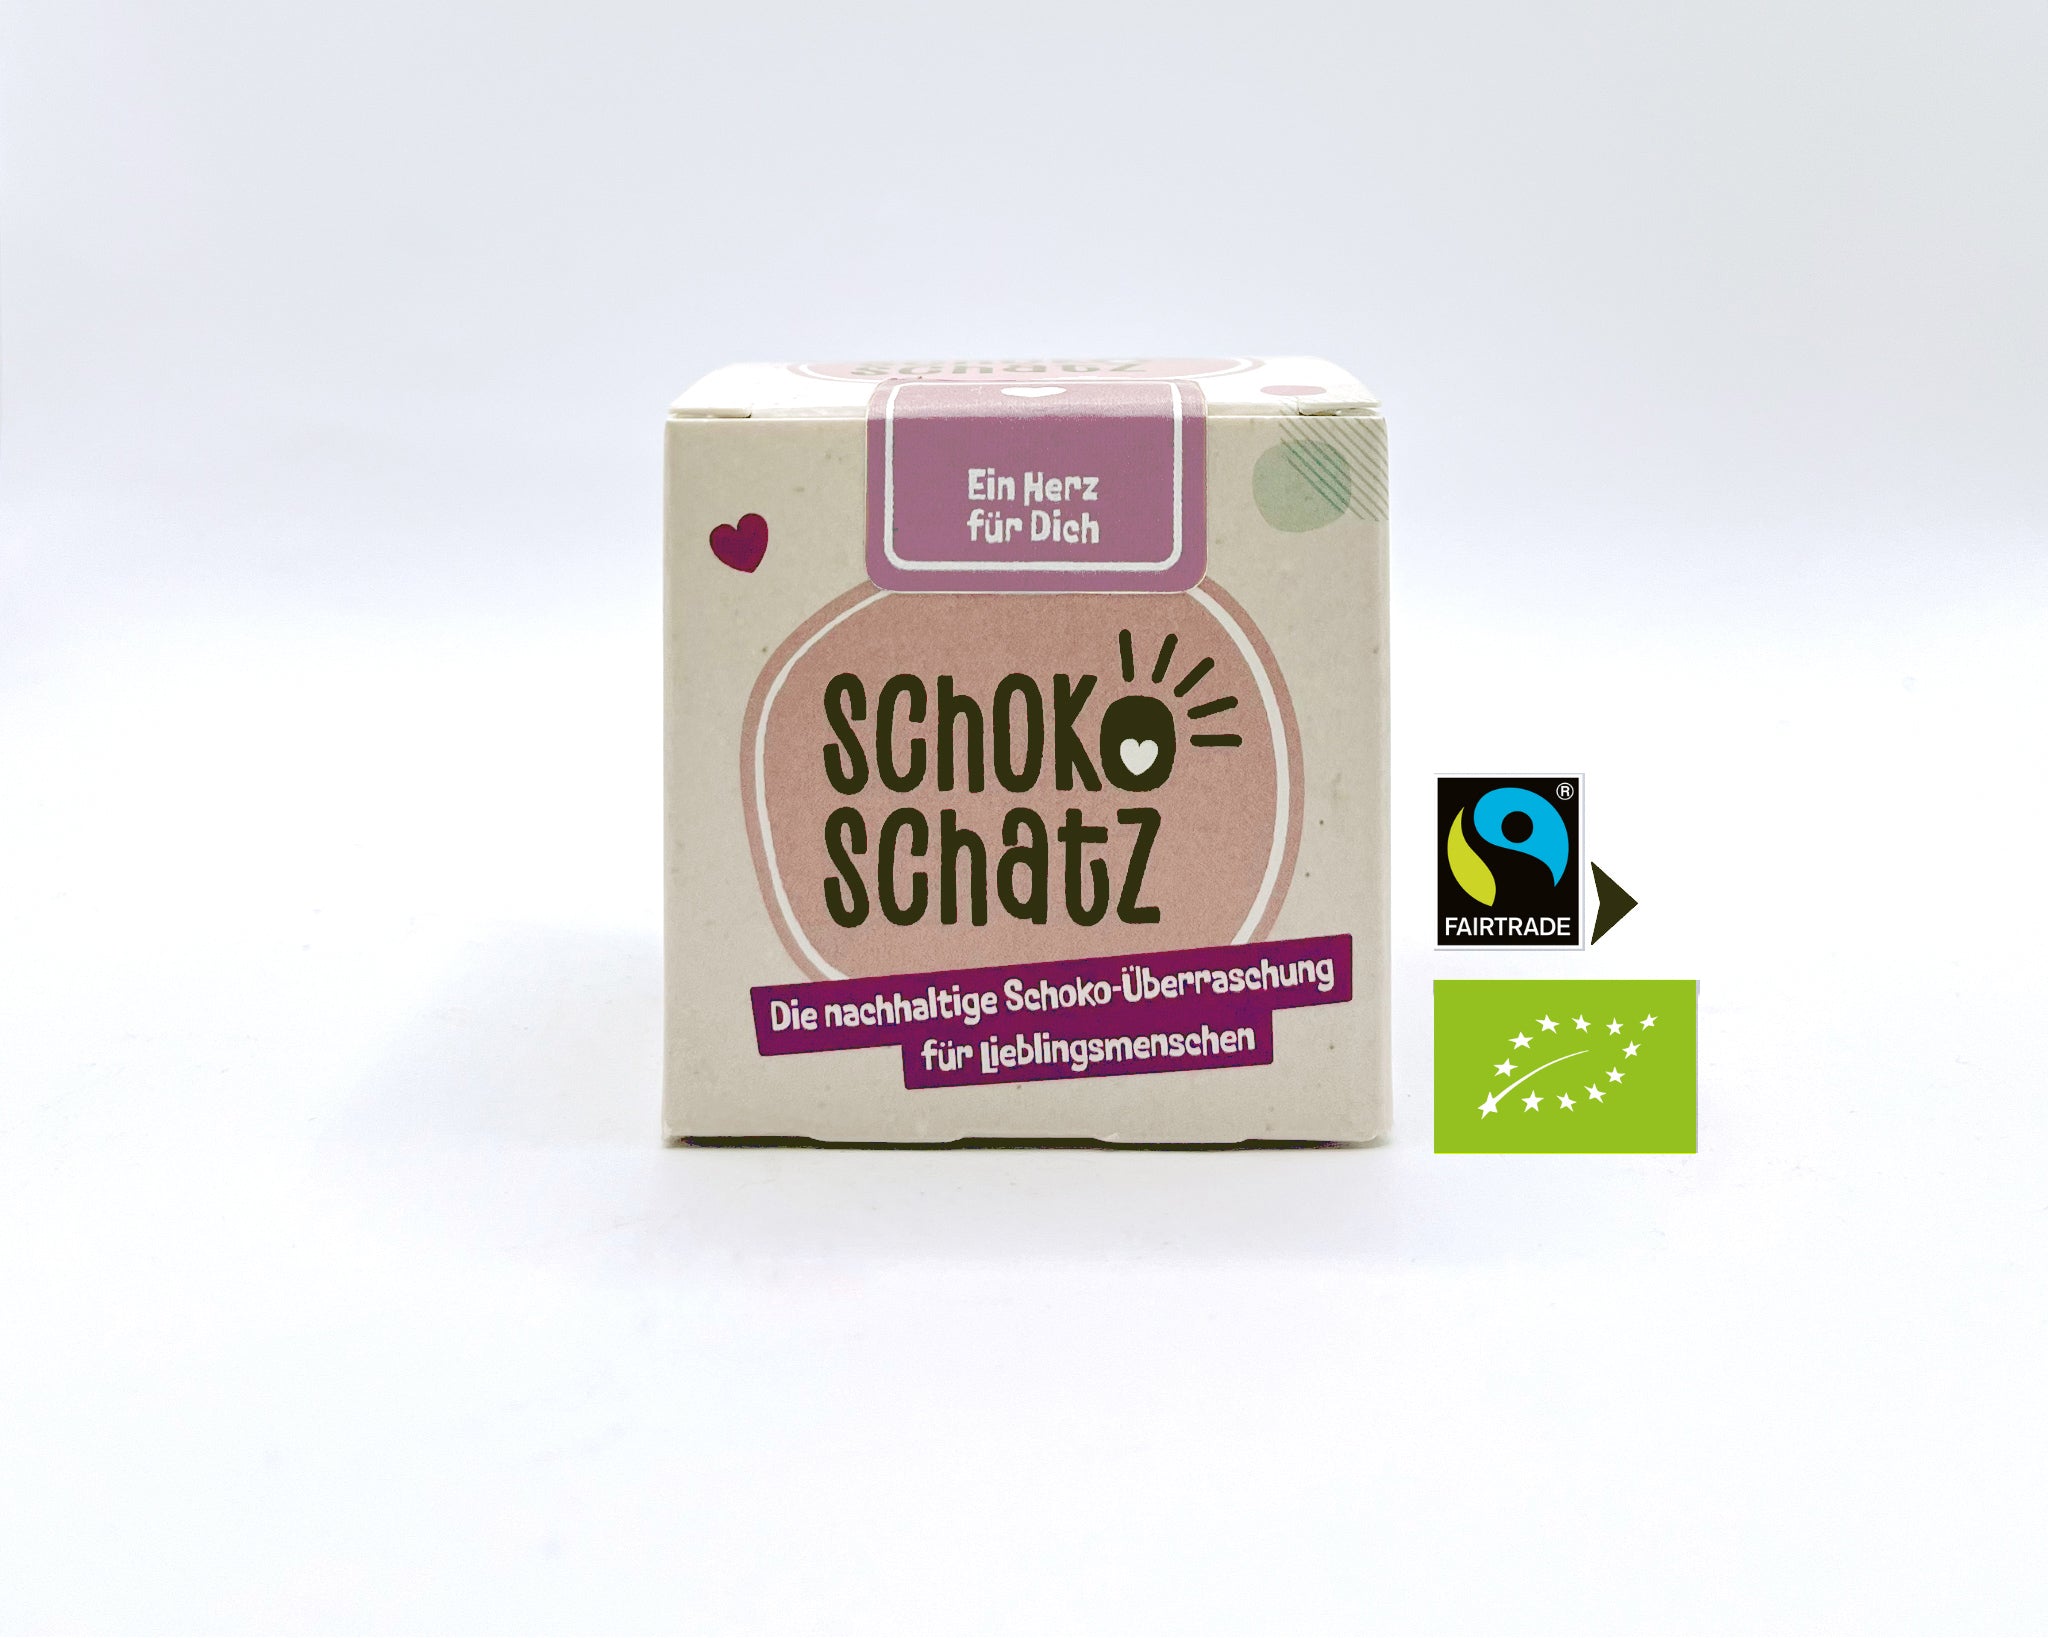 SchokoSchatz für Lieblingsmenschen - shopstartups.de | Startup Produkte